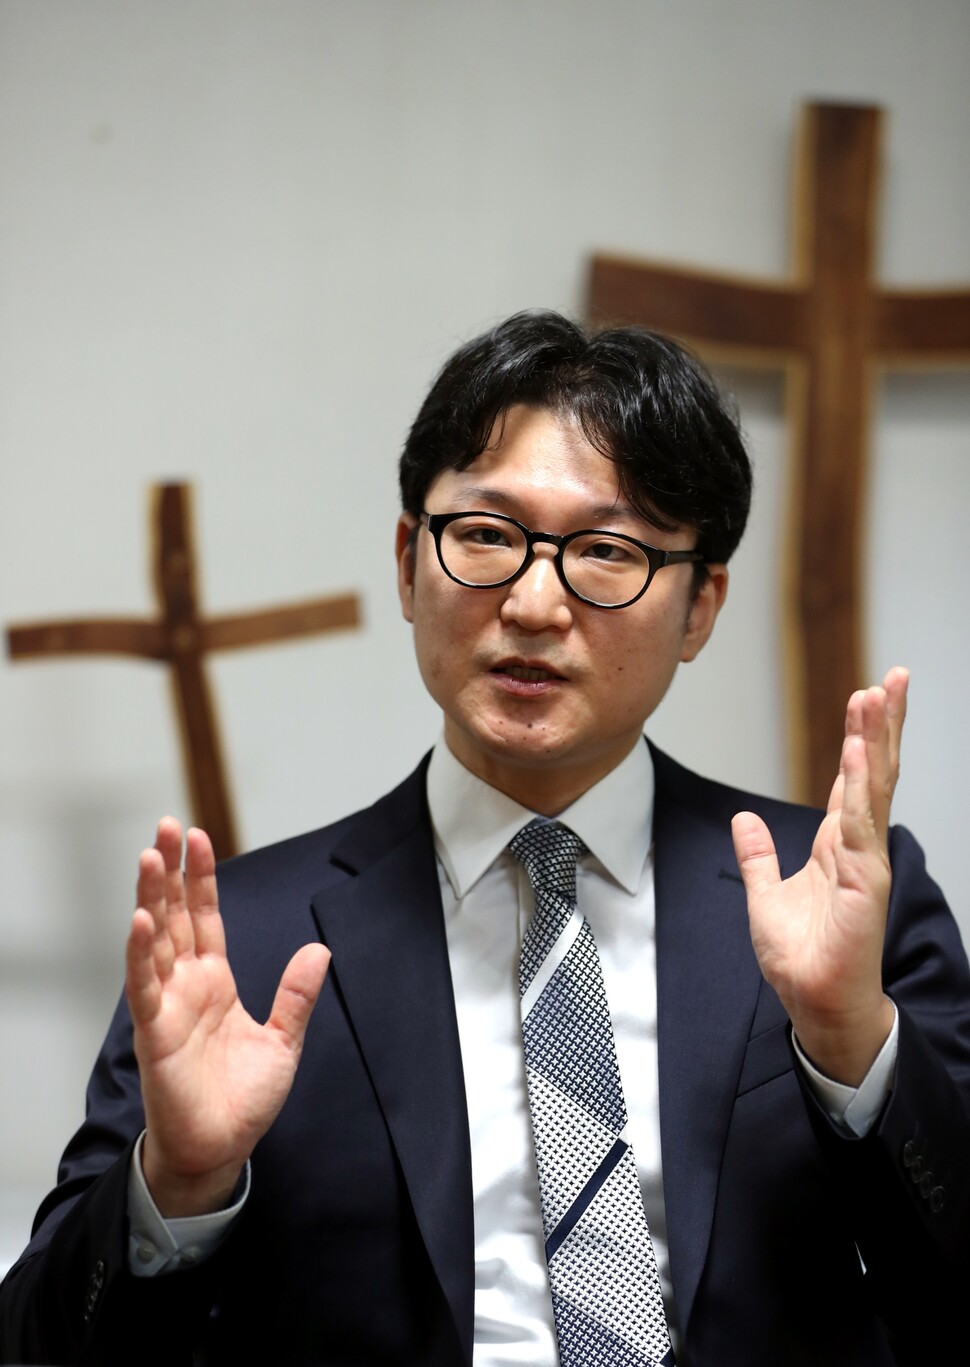 2020년 8월 성소수자 축제에 참석해 축복기도를 했다는 이유로 교회 재판에 기소된 이동환 영광제일교회 목사가 이야기하고 있다. 한겨레 이종근 기자